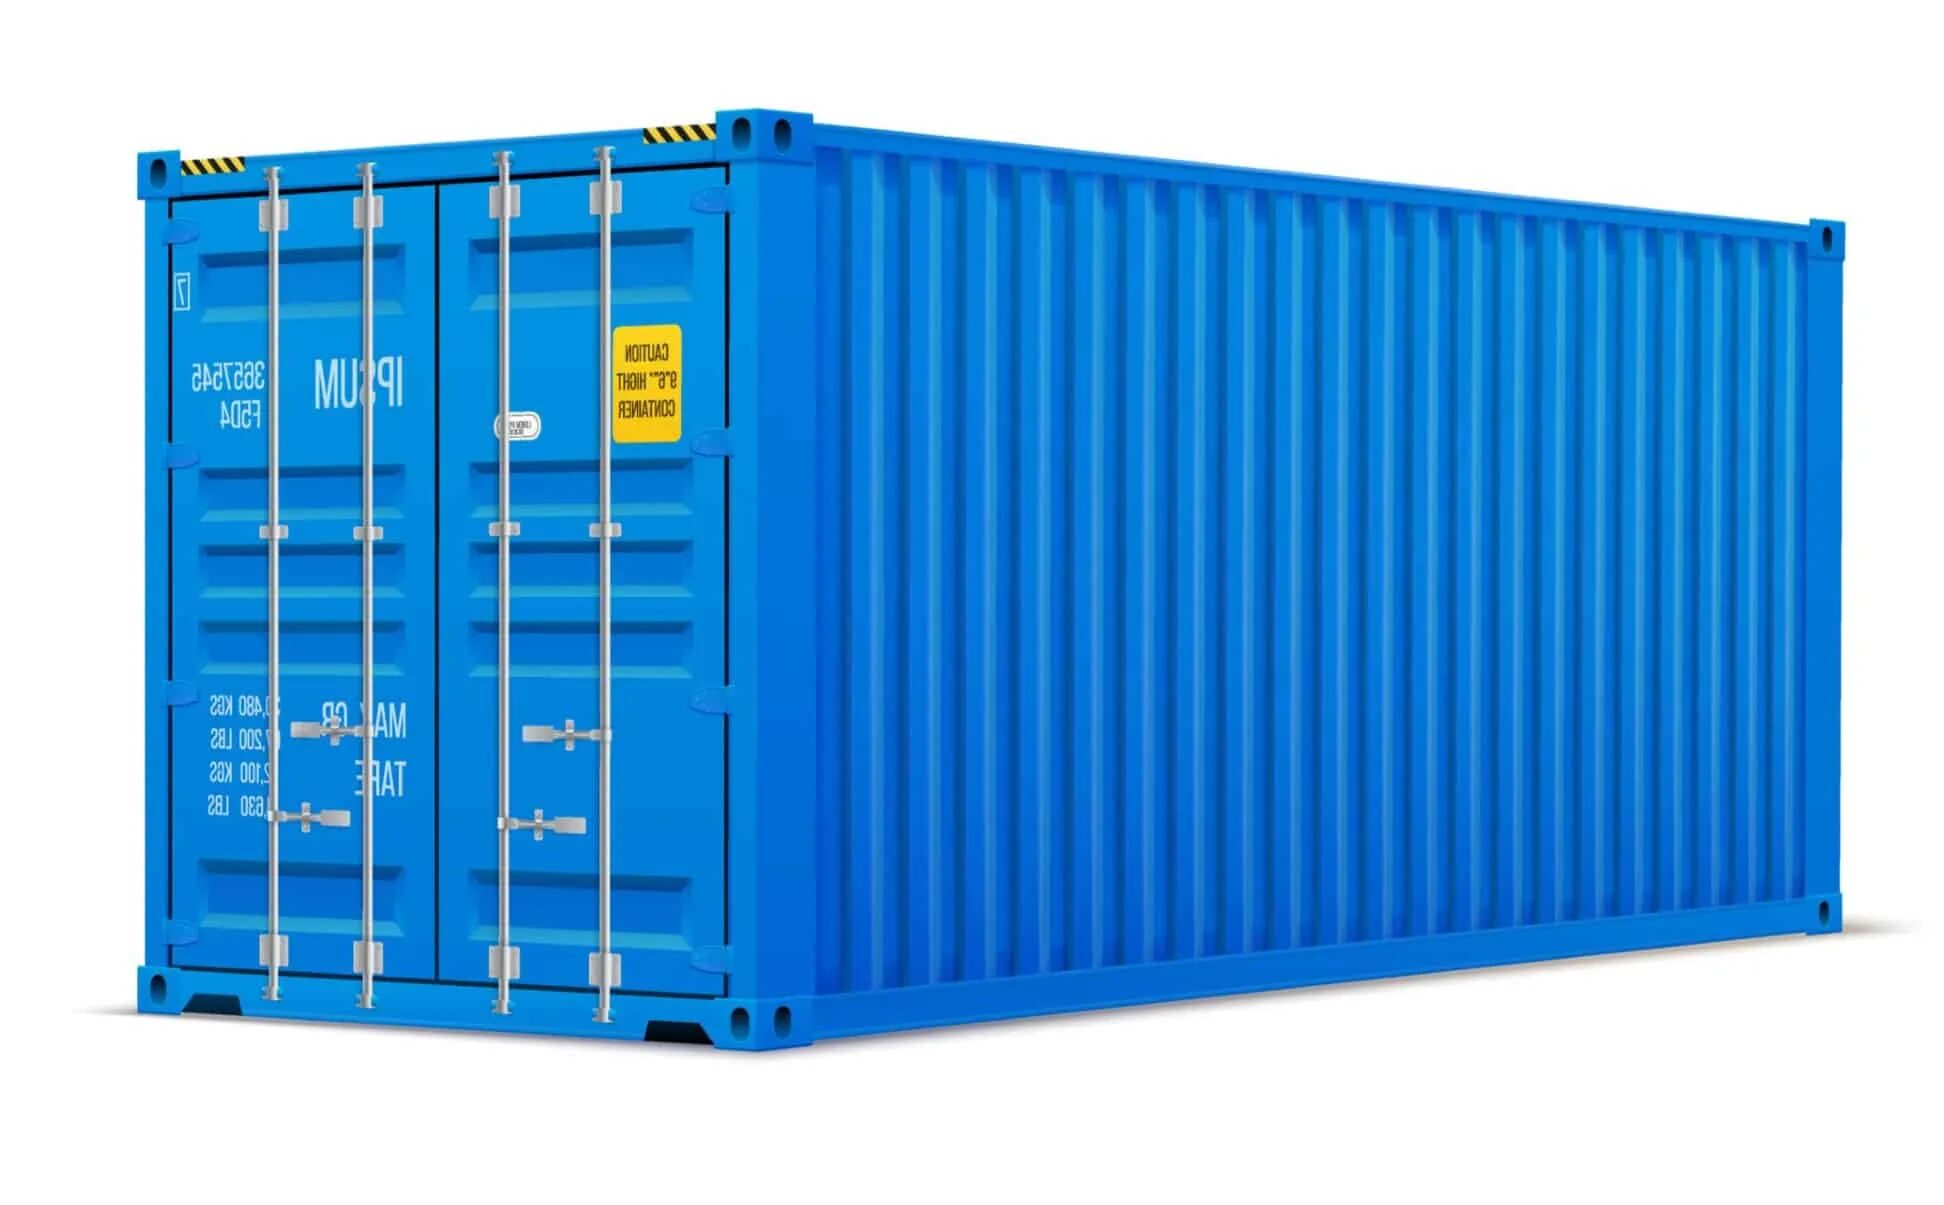 Контейнер 20dc новый. 40-Ка футовый High Cube контейнер увеличенной вместимости. Морской контейнер 40 футов HC, DC. Контейнер 20dc hlxu3340109.